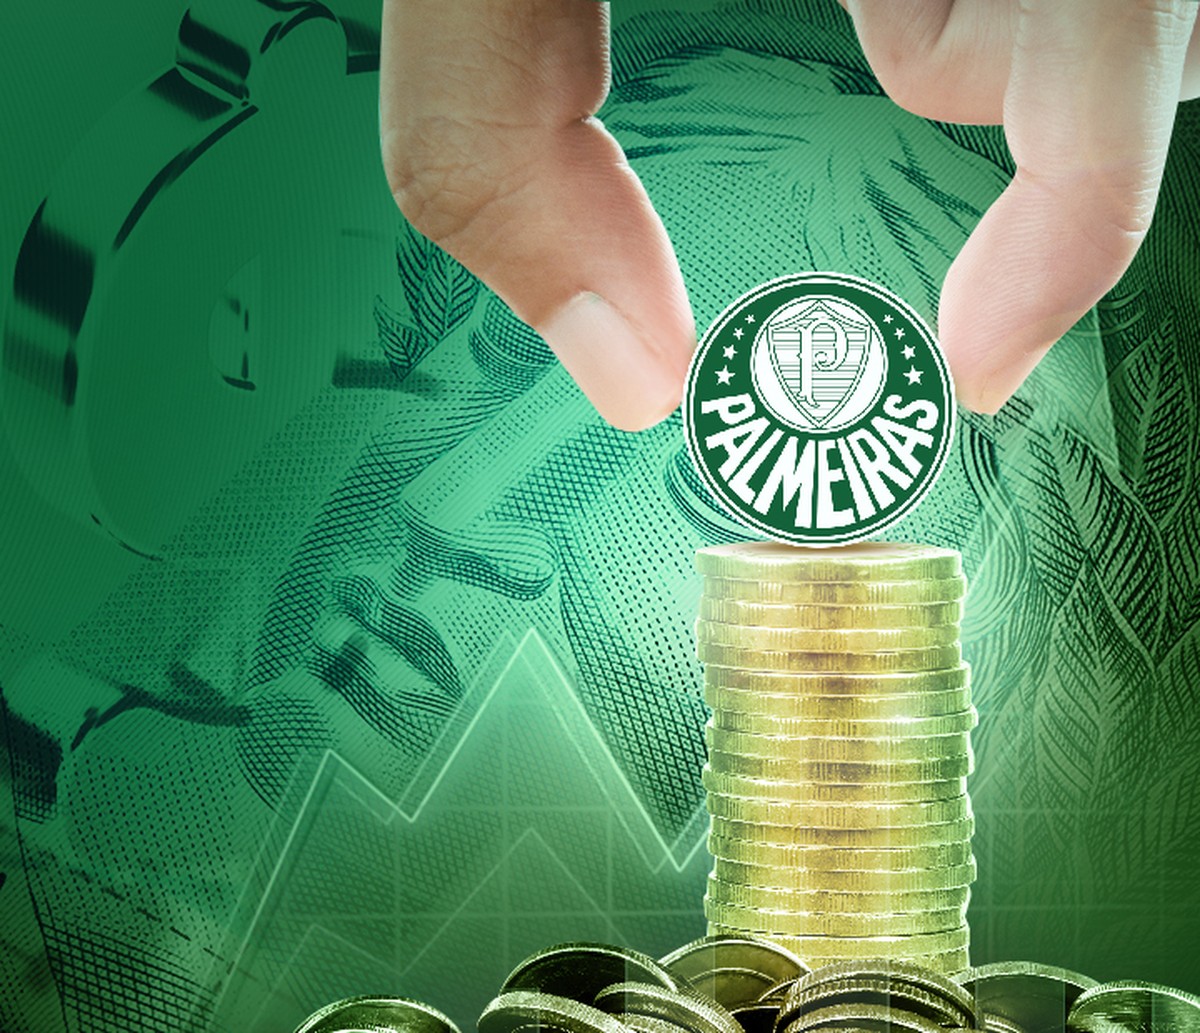 O que a premiação do Brasileirão representa para as finanças do Palmeiras?